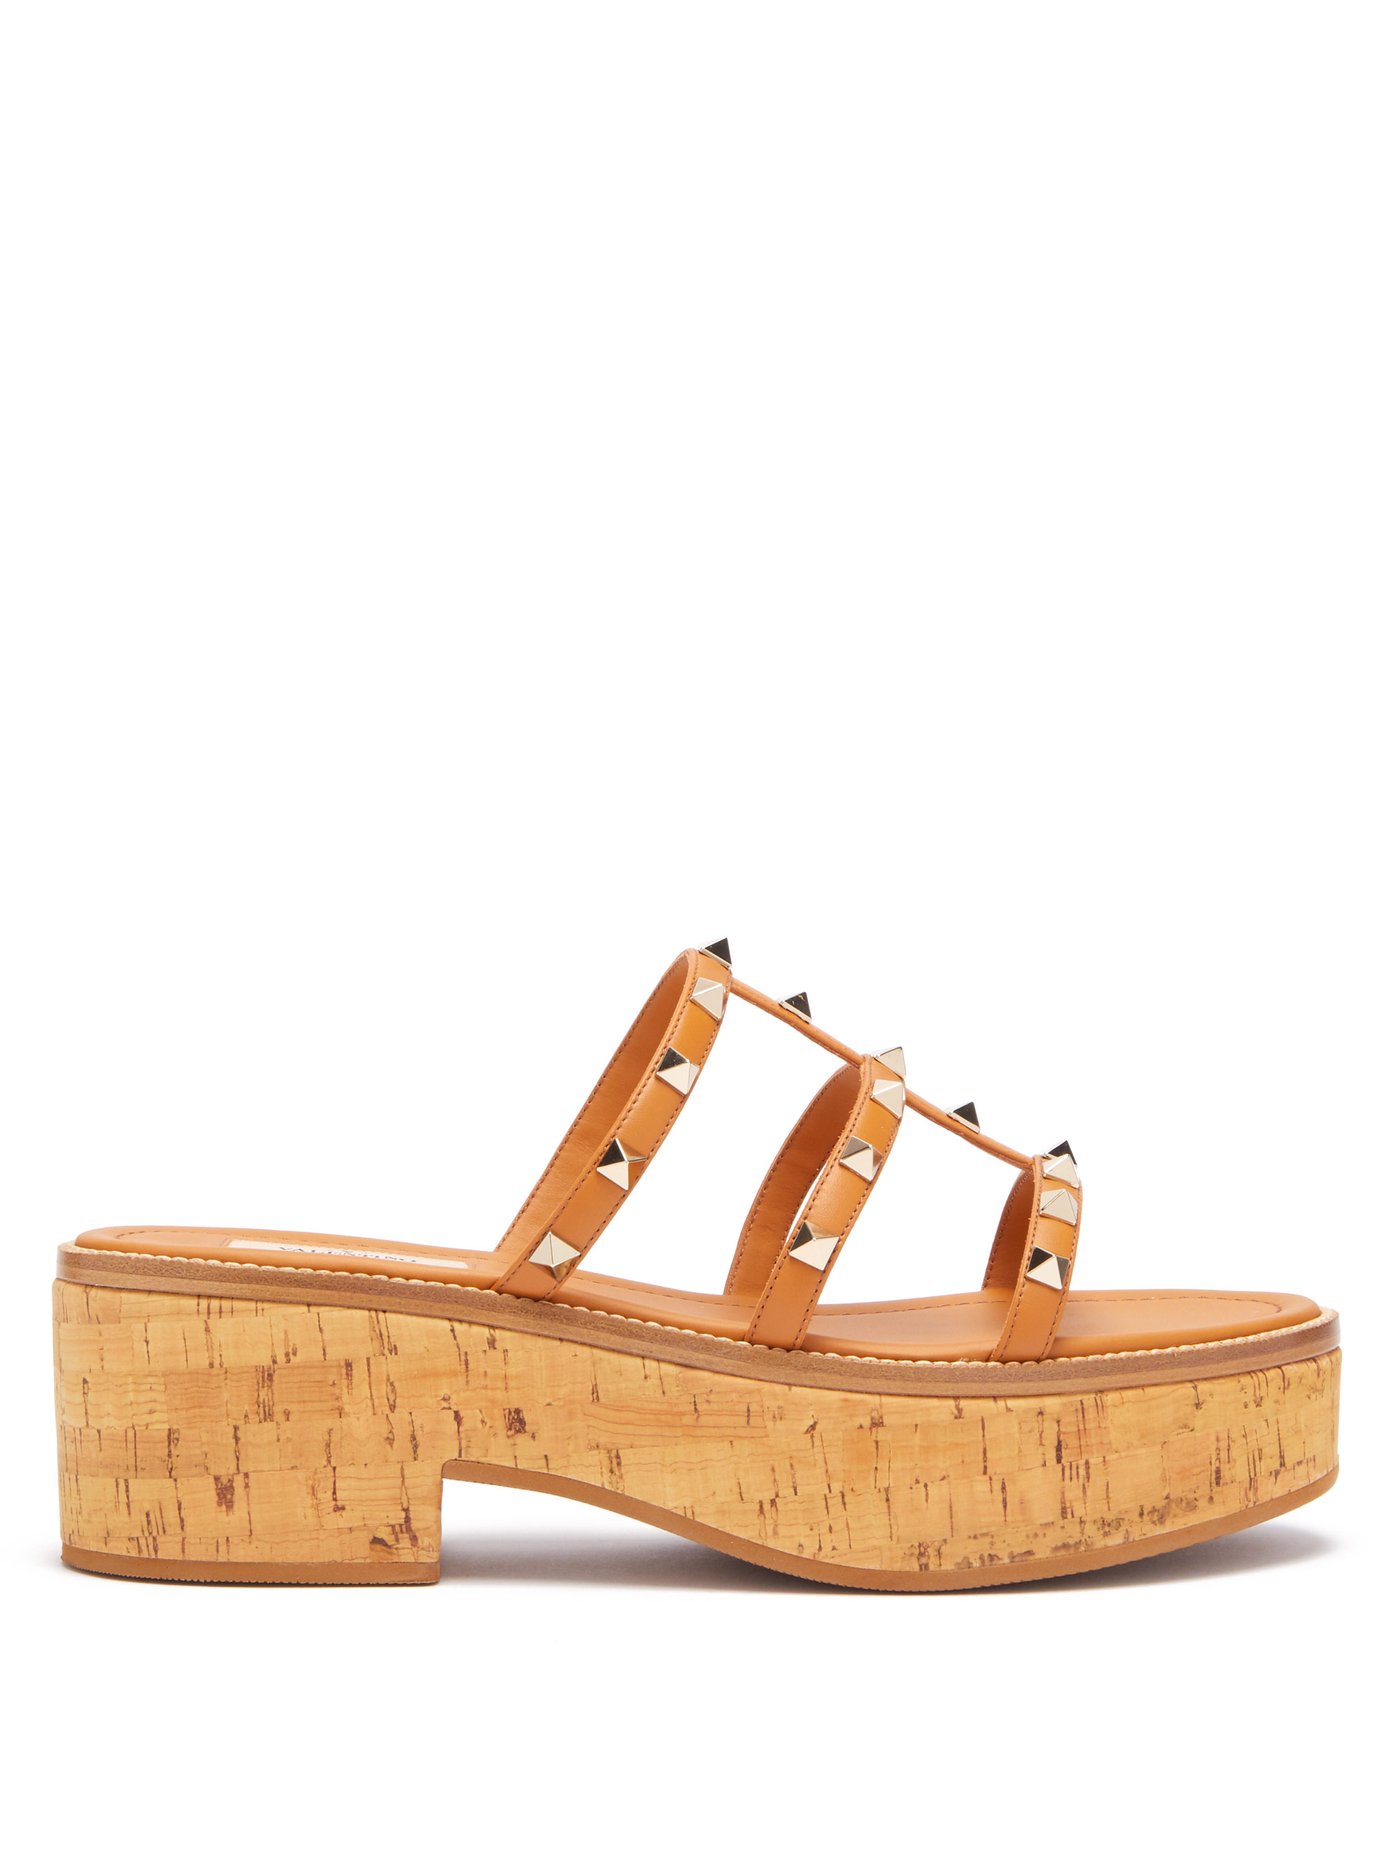 platform sandals cork